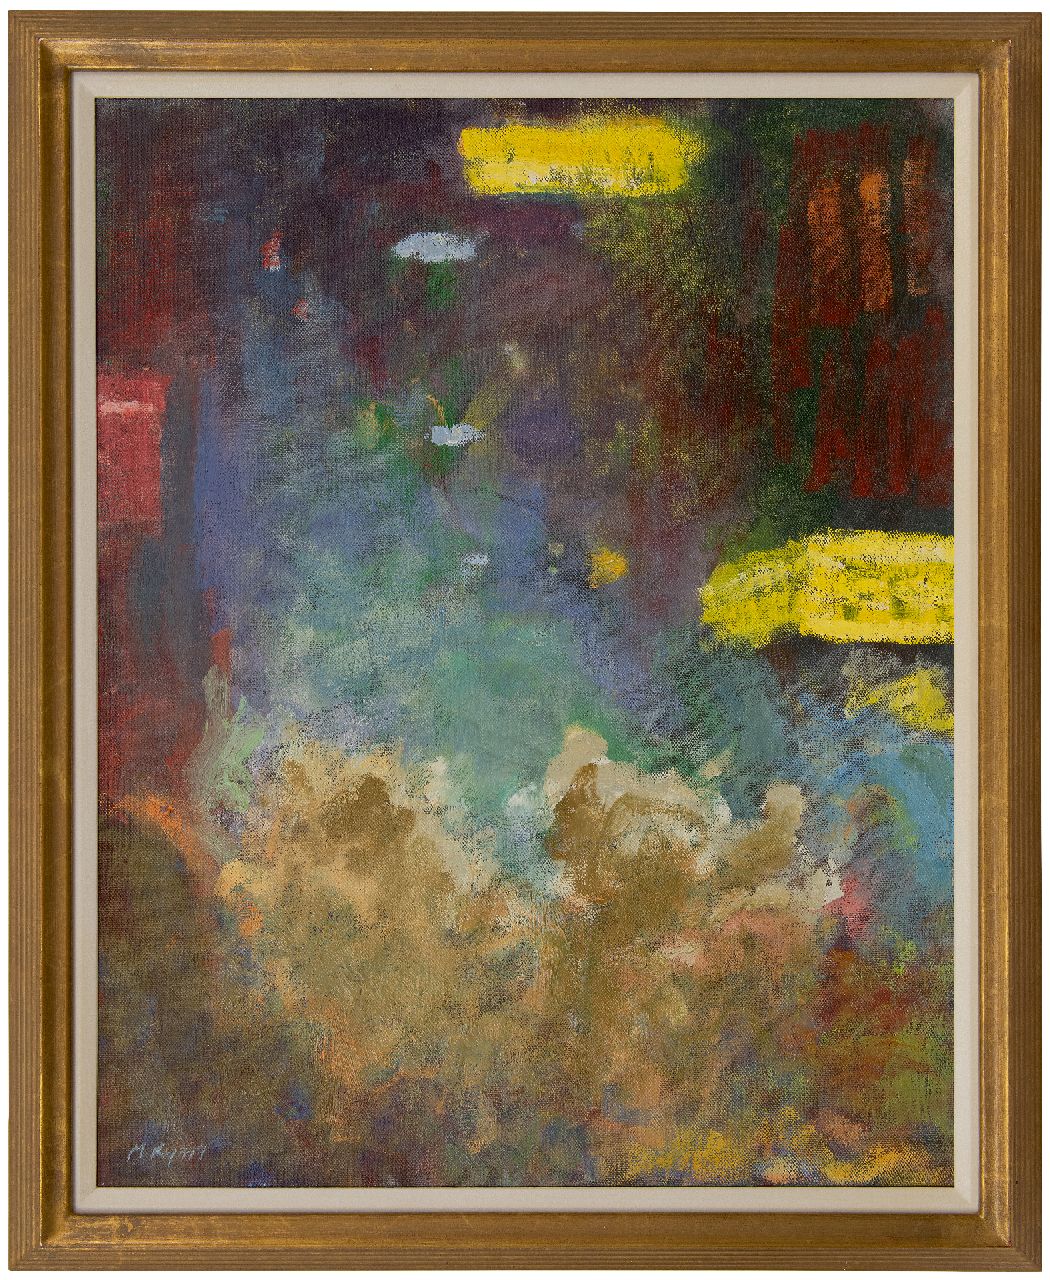 Ryan M.  | Michael Ryan | Schilderijen te koop aangeboden | Amsterdam bij nacht, olieverf op doek 75,0 x 60,4 cm, gesigneerd linksonder